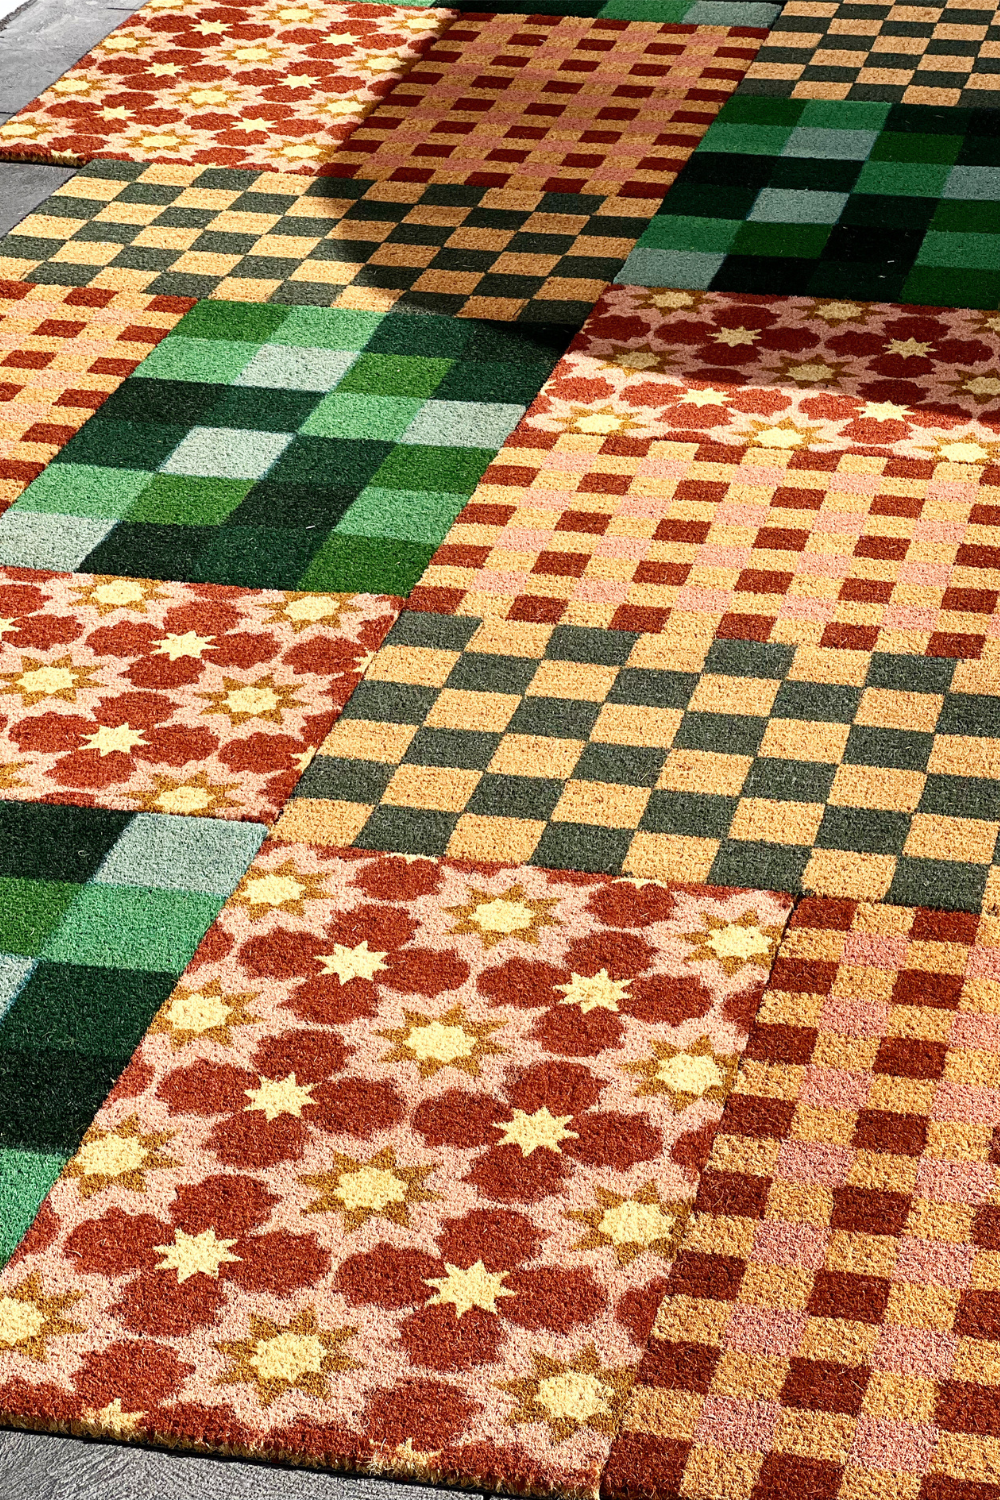 Doormat Checker Green